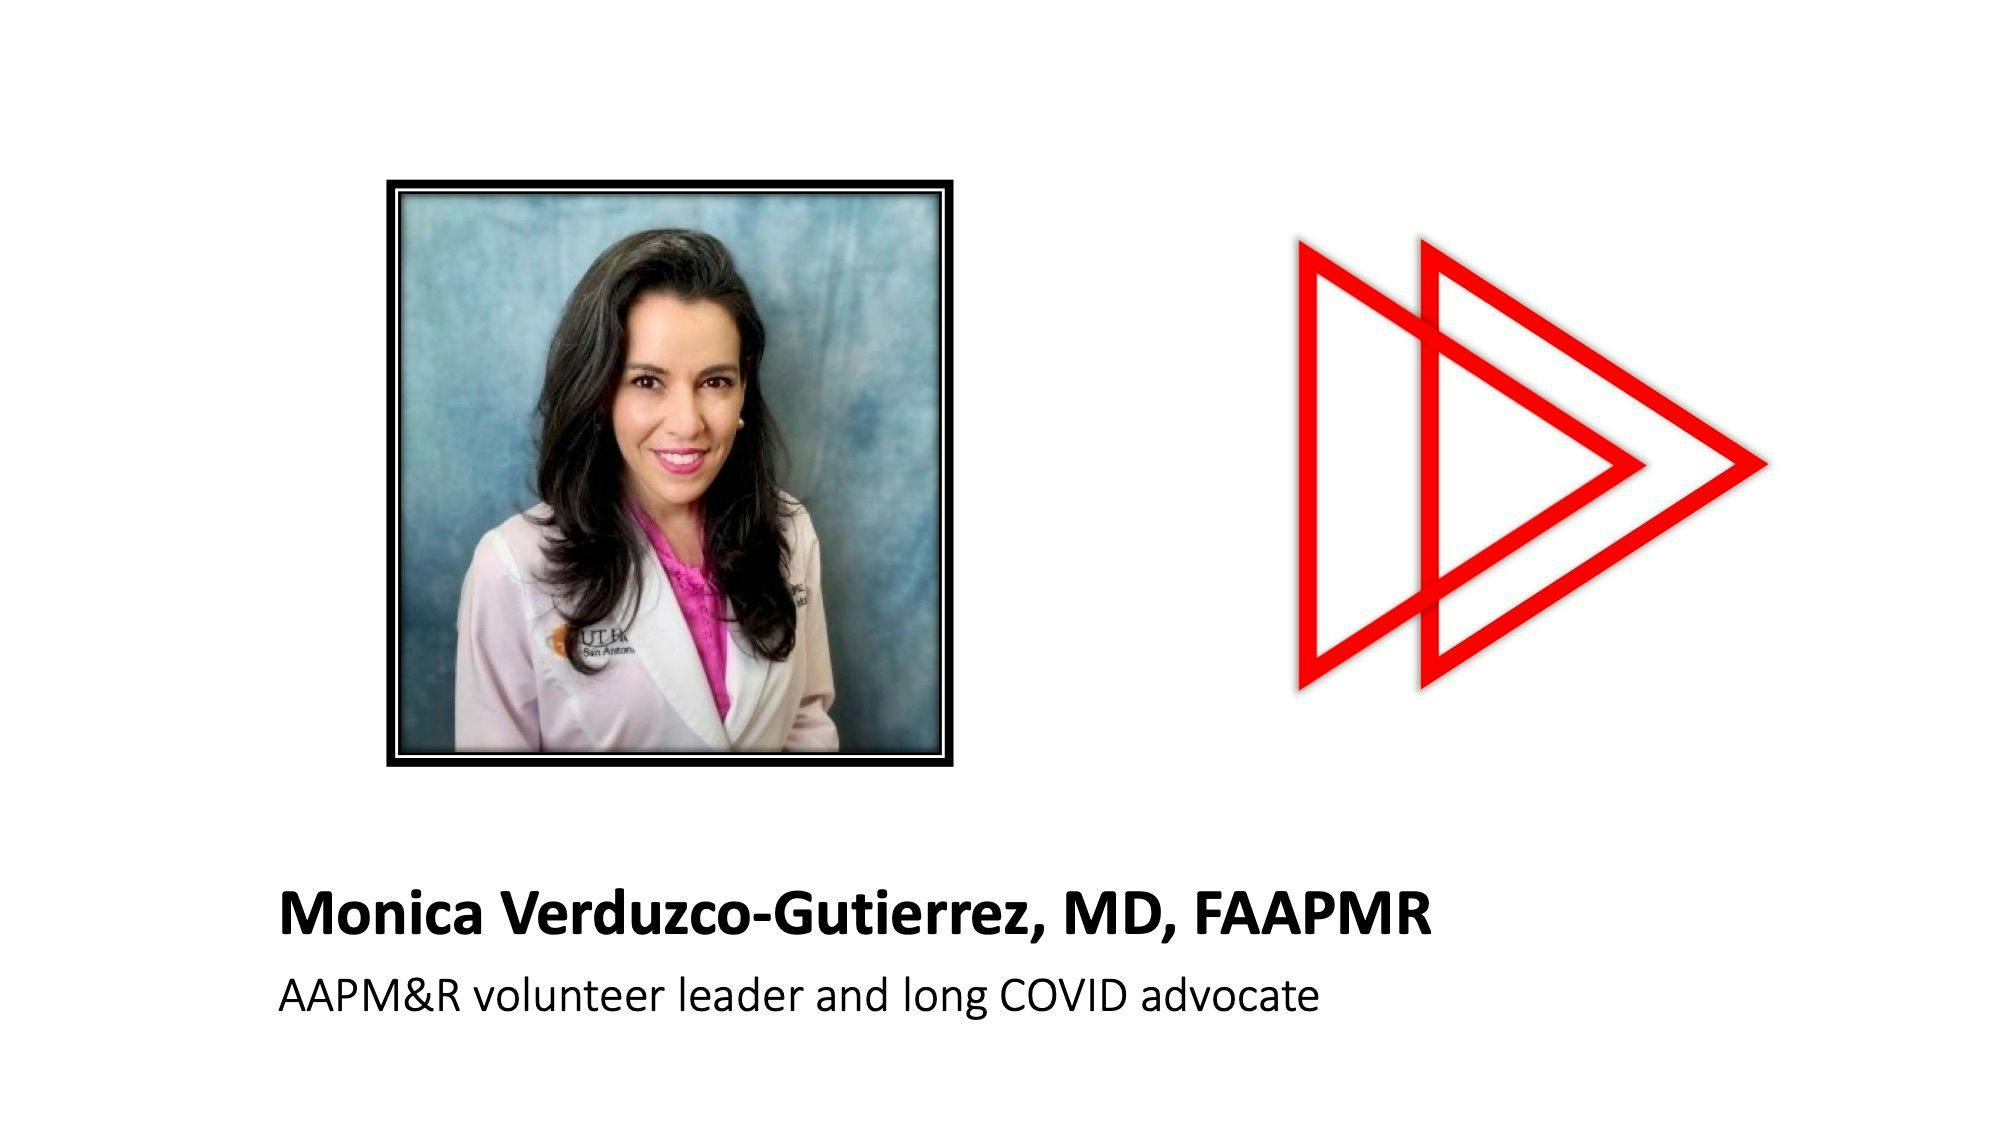 Monica Verduzco-Gutierrez, MD, FAAPMR, gives expert advice